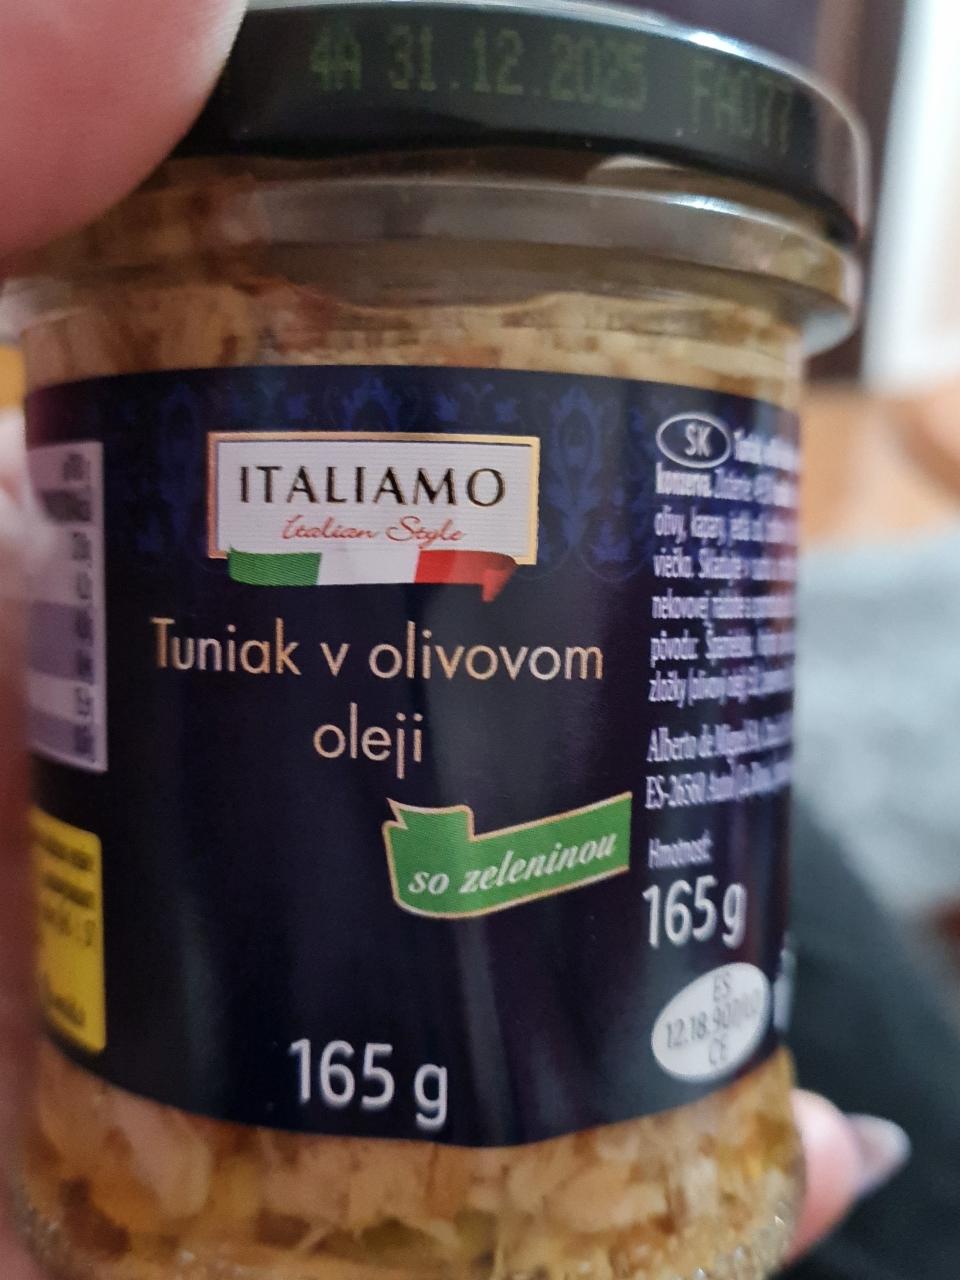 Fotografie - tuniak v olivovom oleji so zeleninou italiamo